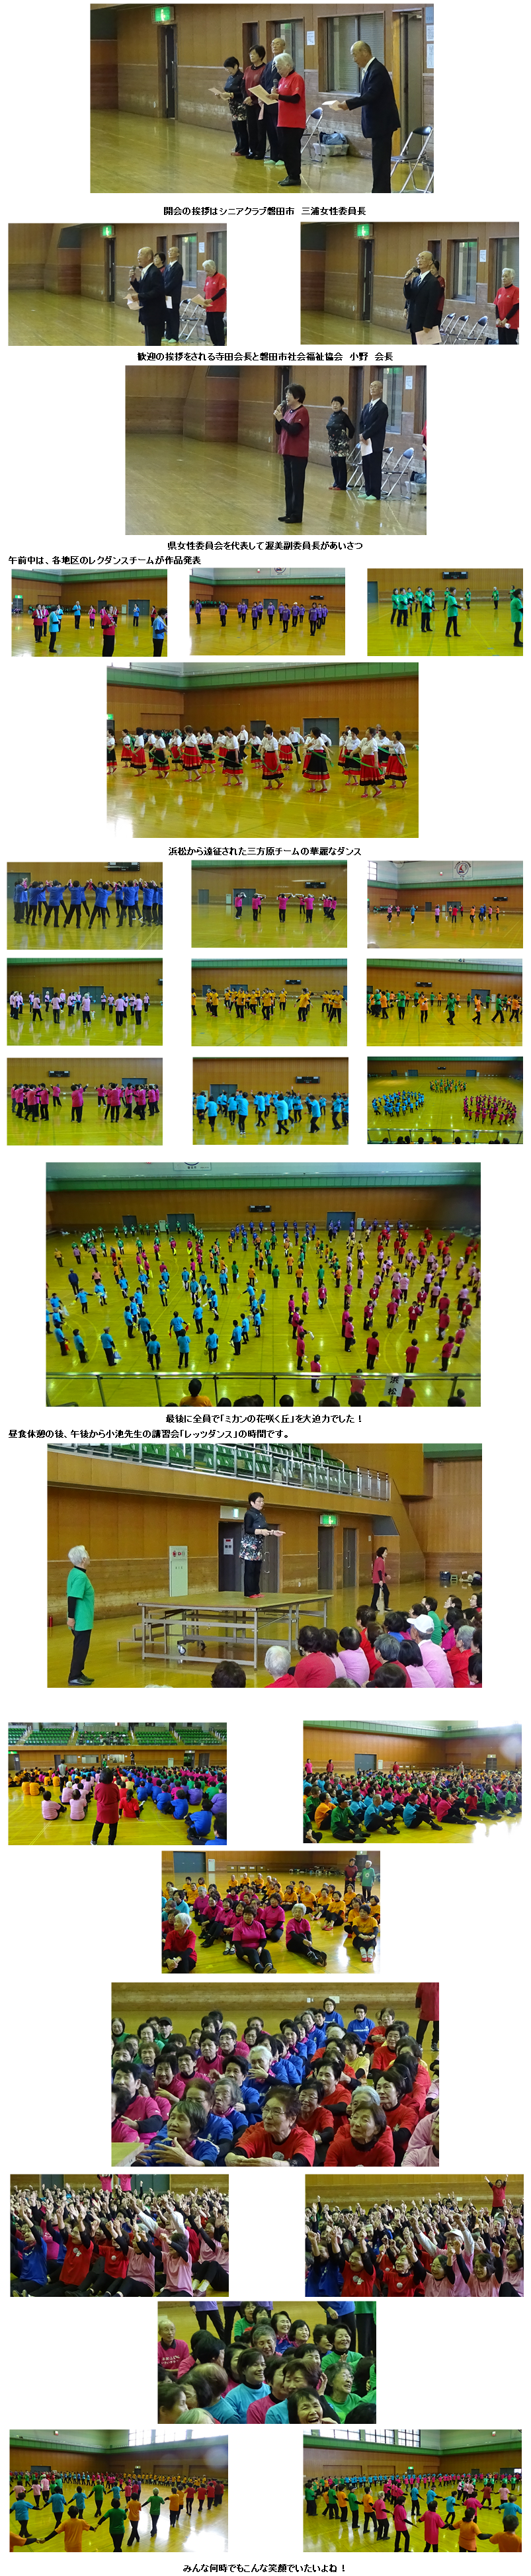 レクリエーションダンス大会 ミニ交流会in磐田 シニアクラブ静岡県